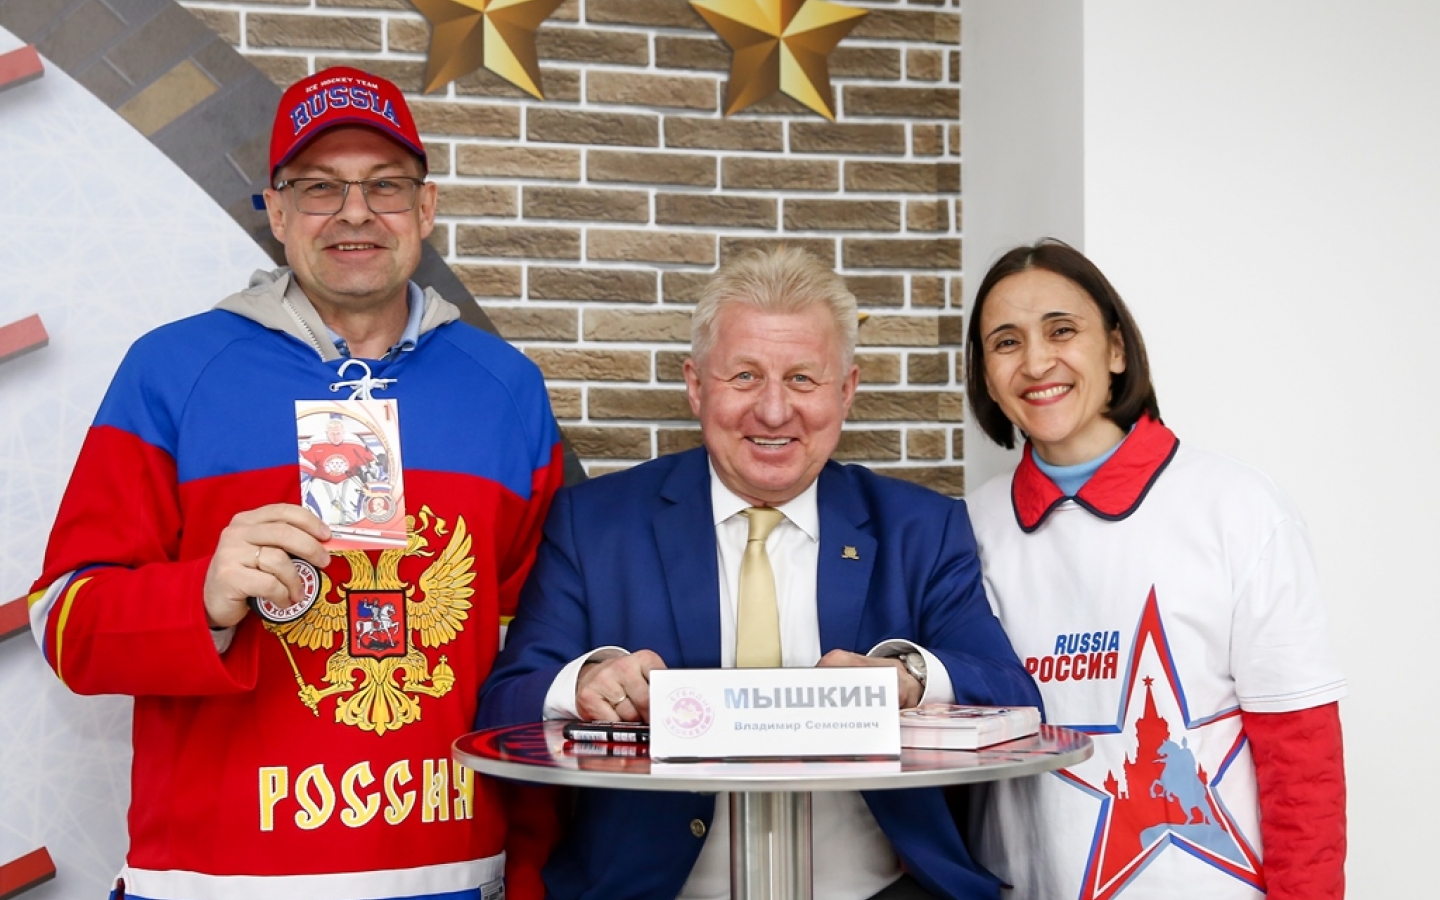 Владимир Мышкин: Сорокин доказал, что не посторонний человек в сборной